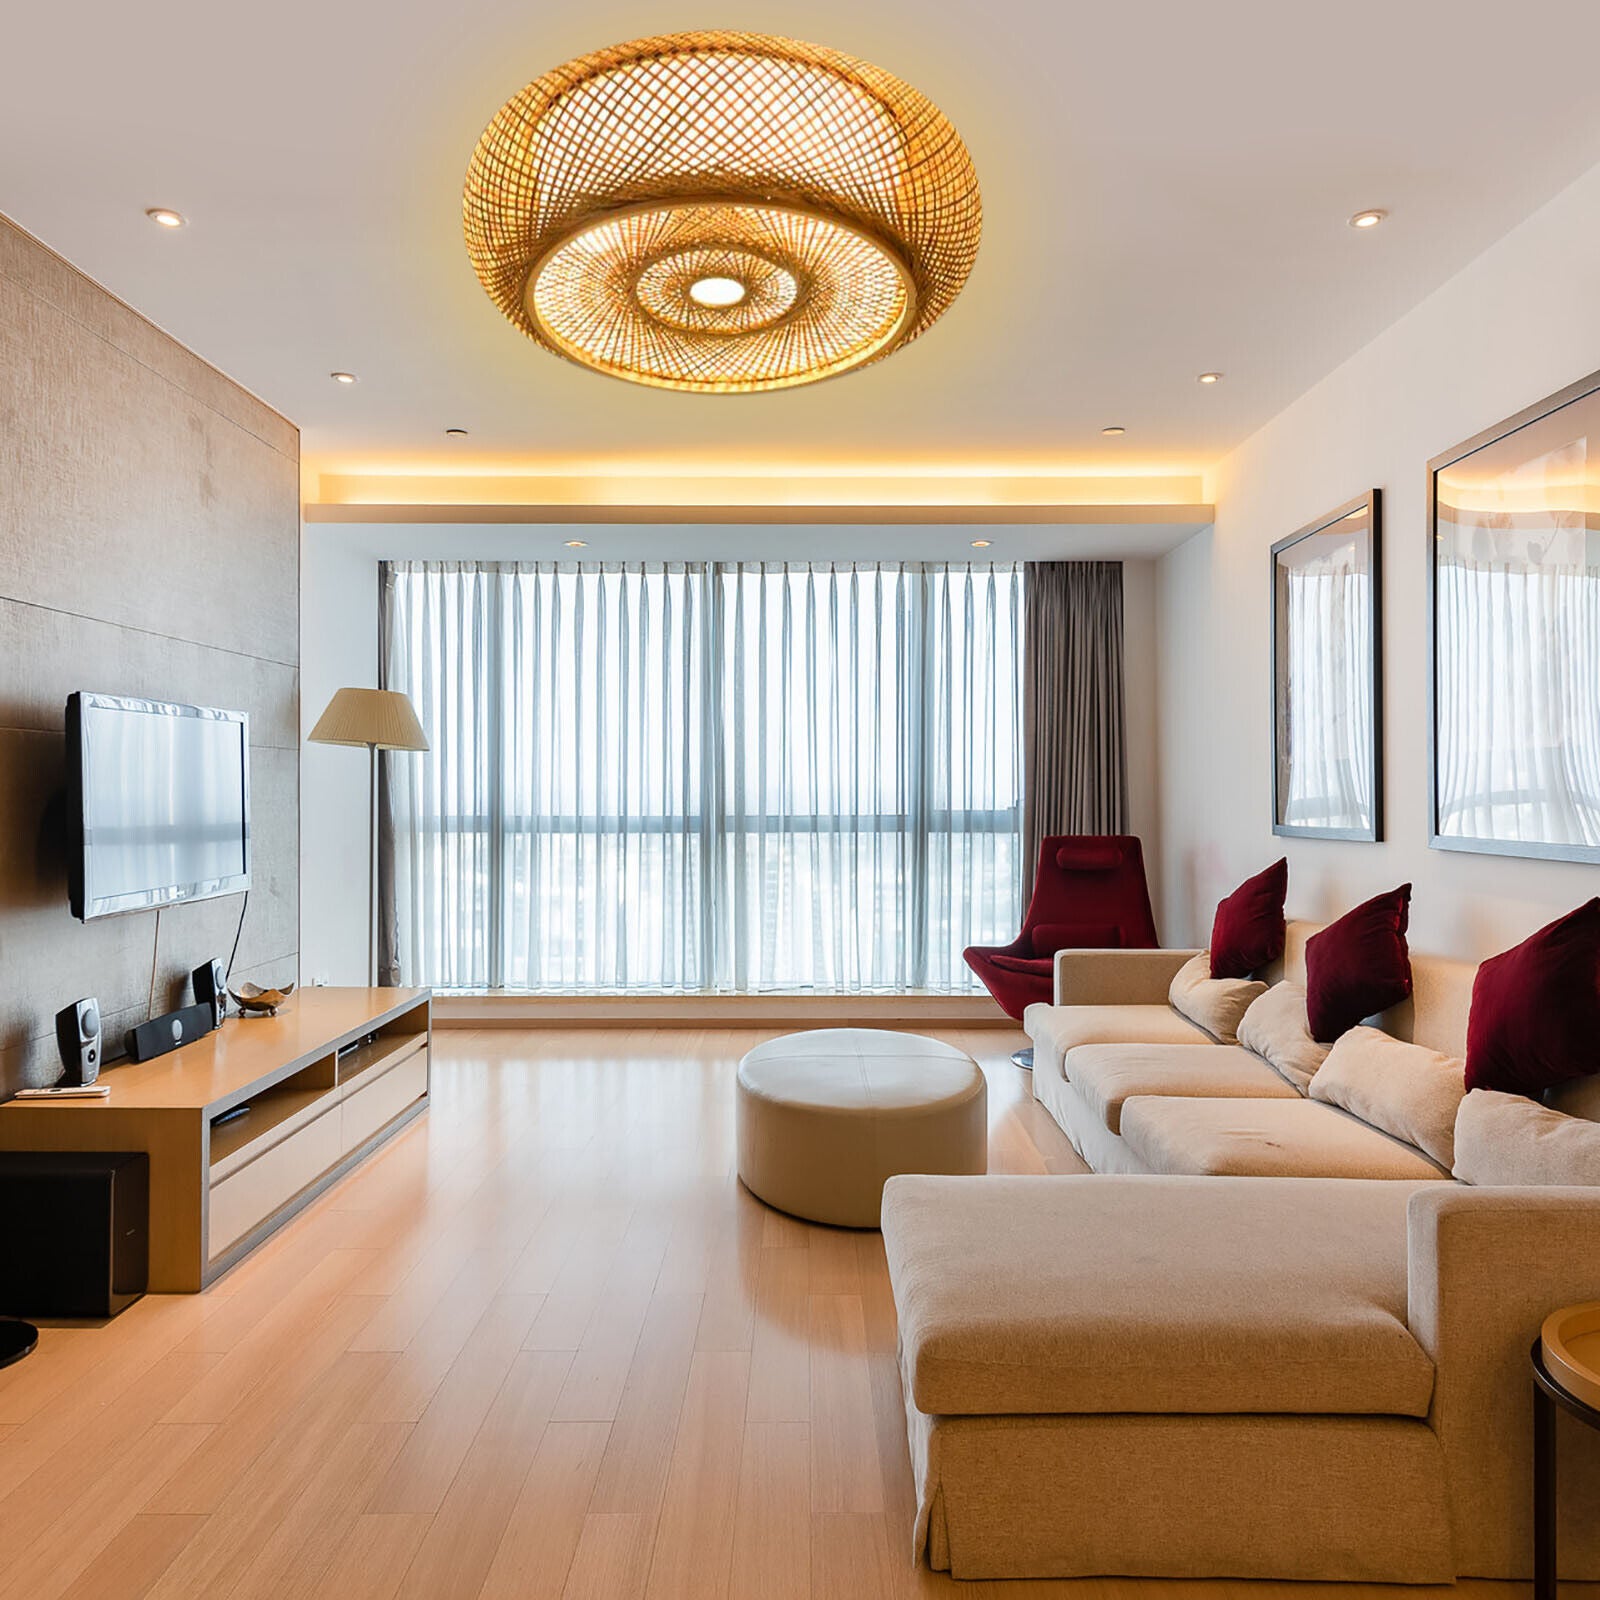 Lampada da soffitto in bambù da 50 cm con intreccio in legno lampada da soffitto per soggiorno lampada a sospensione